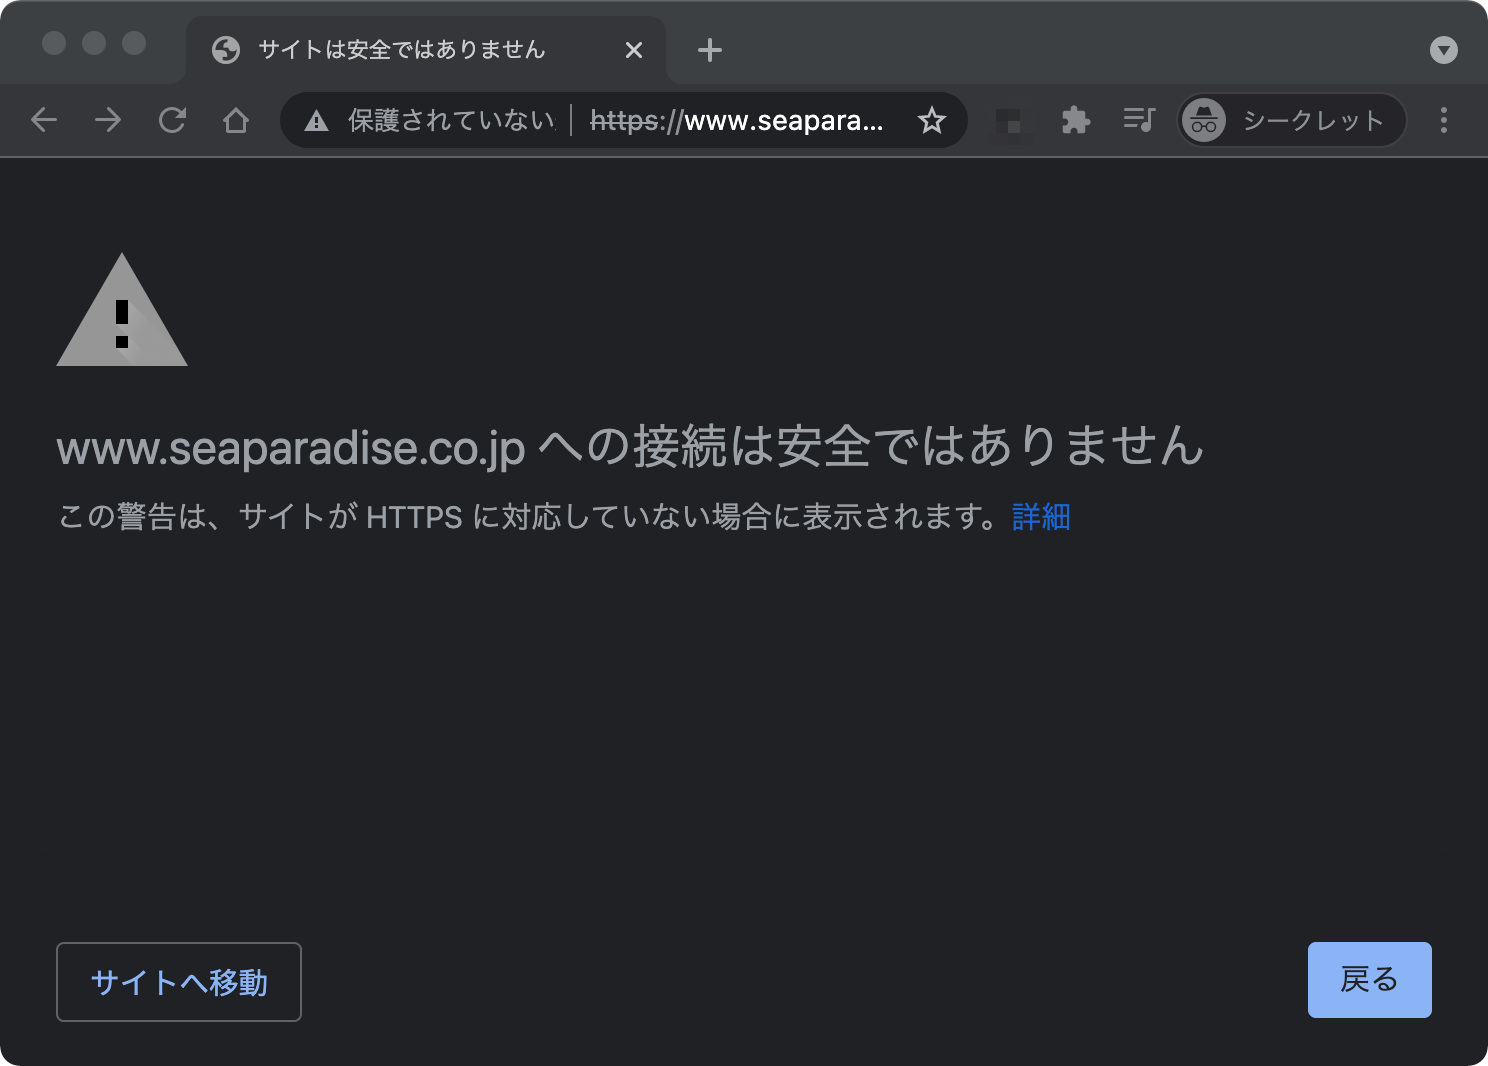 example.com への接続は安全ではありません。この警告は、サイトが HTTPS に対応していない場合に表示されます。